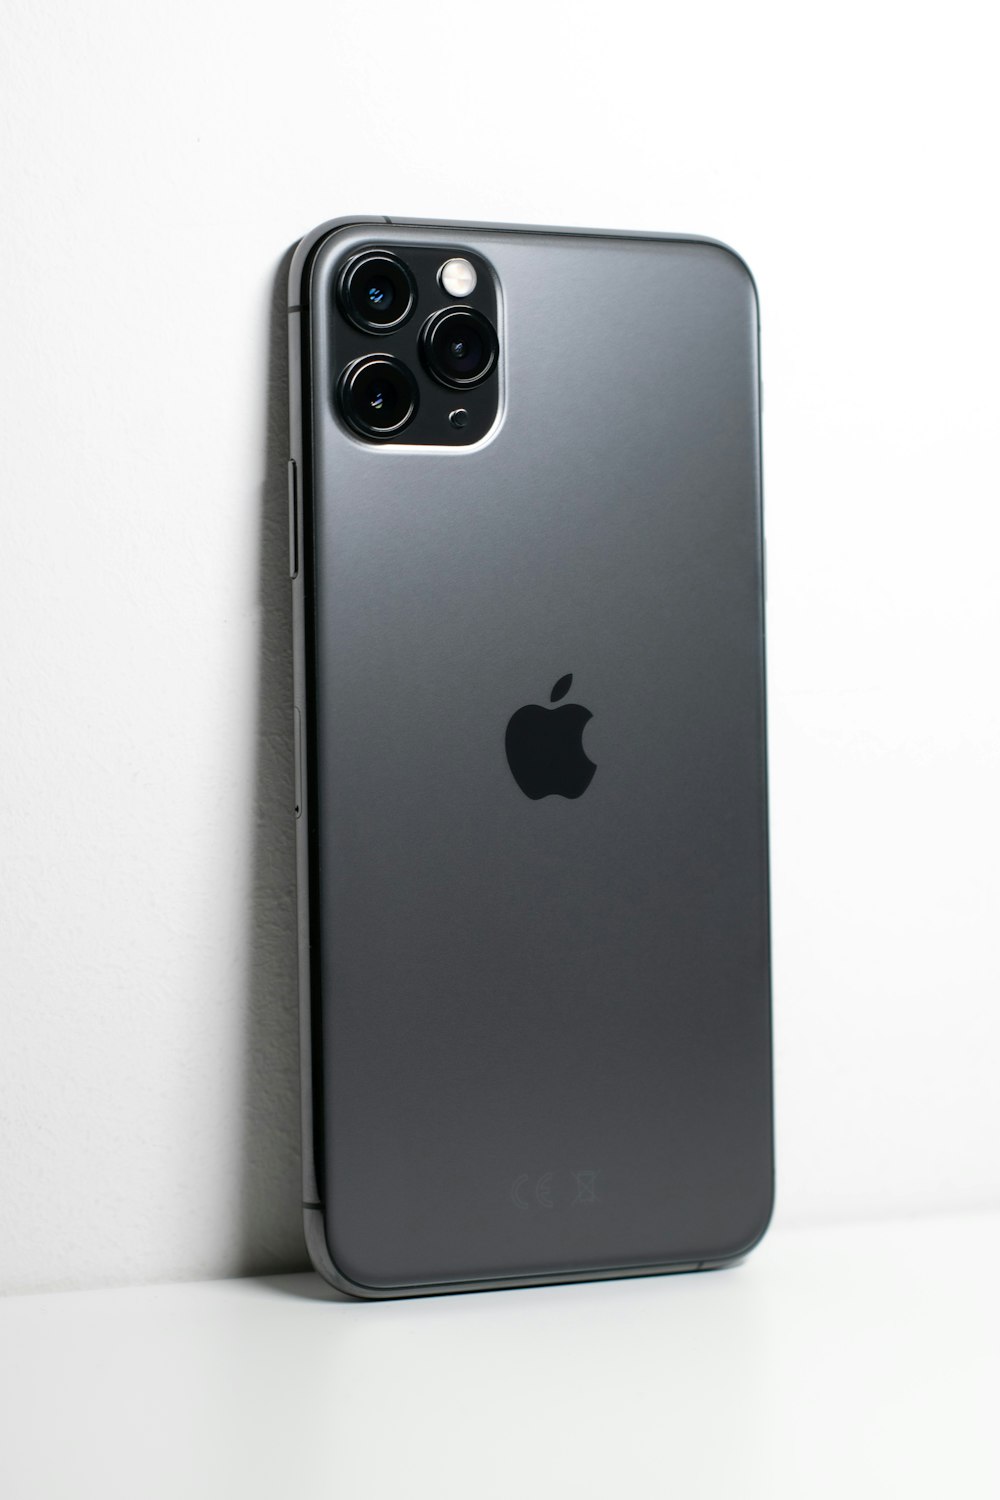 흰색 표면에 검은 색 아이폰 7 플러스